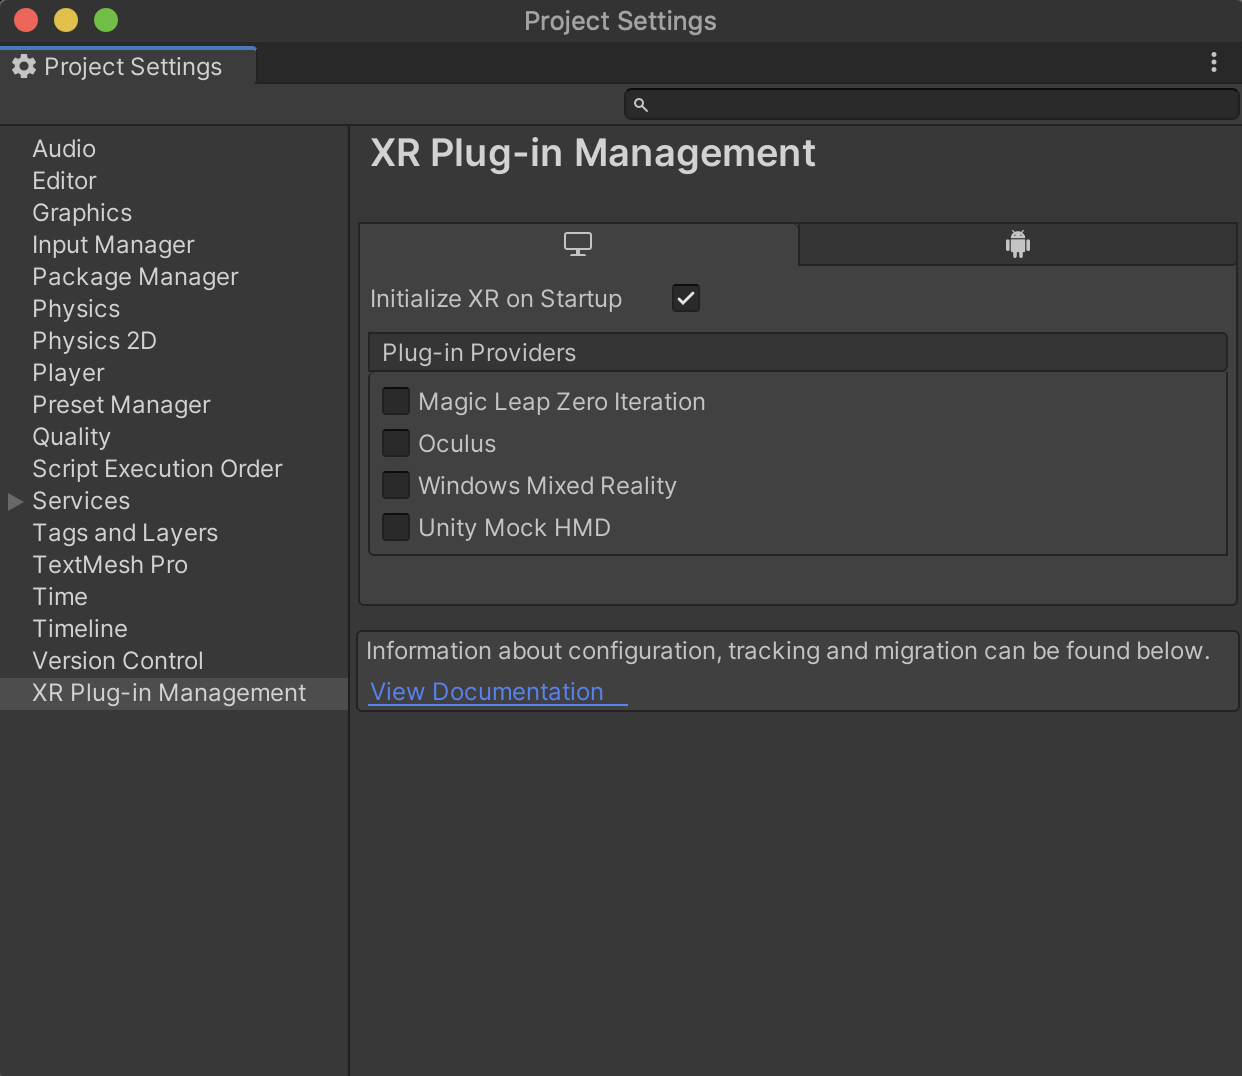 注意：建议在安装 XR Plug-in Management 之前修复任何与升级相关的脚本错误。